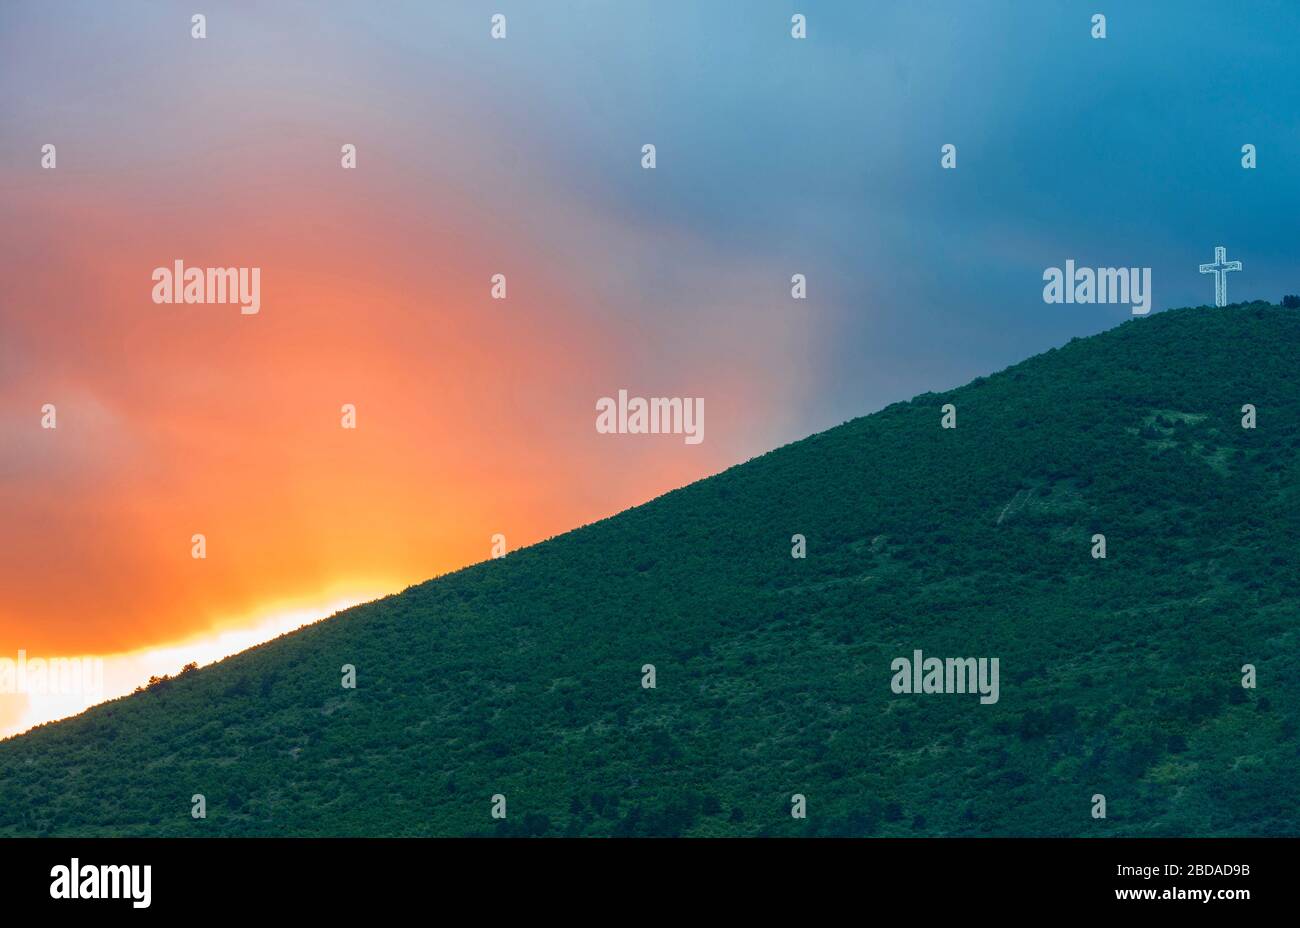 Coucher de soleil dans le ciel derrière une colline verte. Une statue de croix sur le sommet de la colline. Banque D'Images